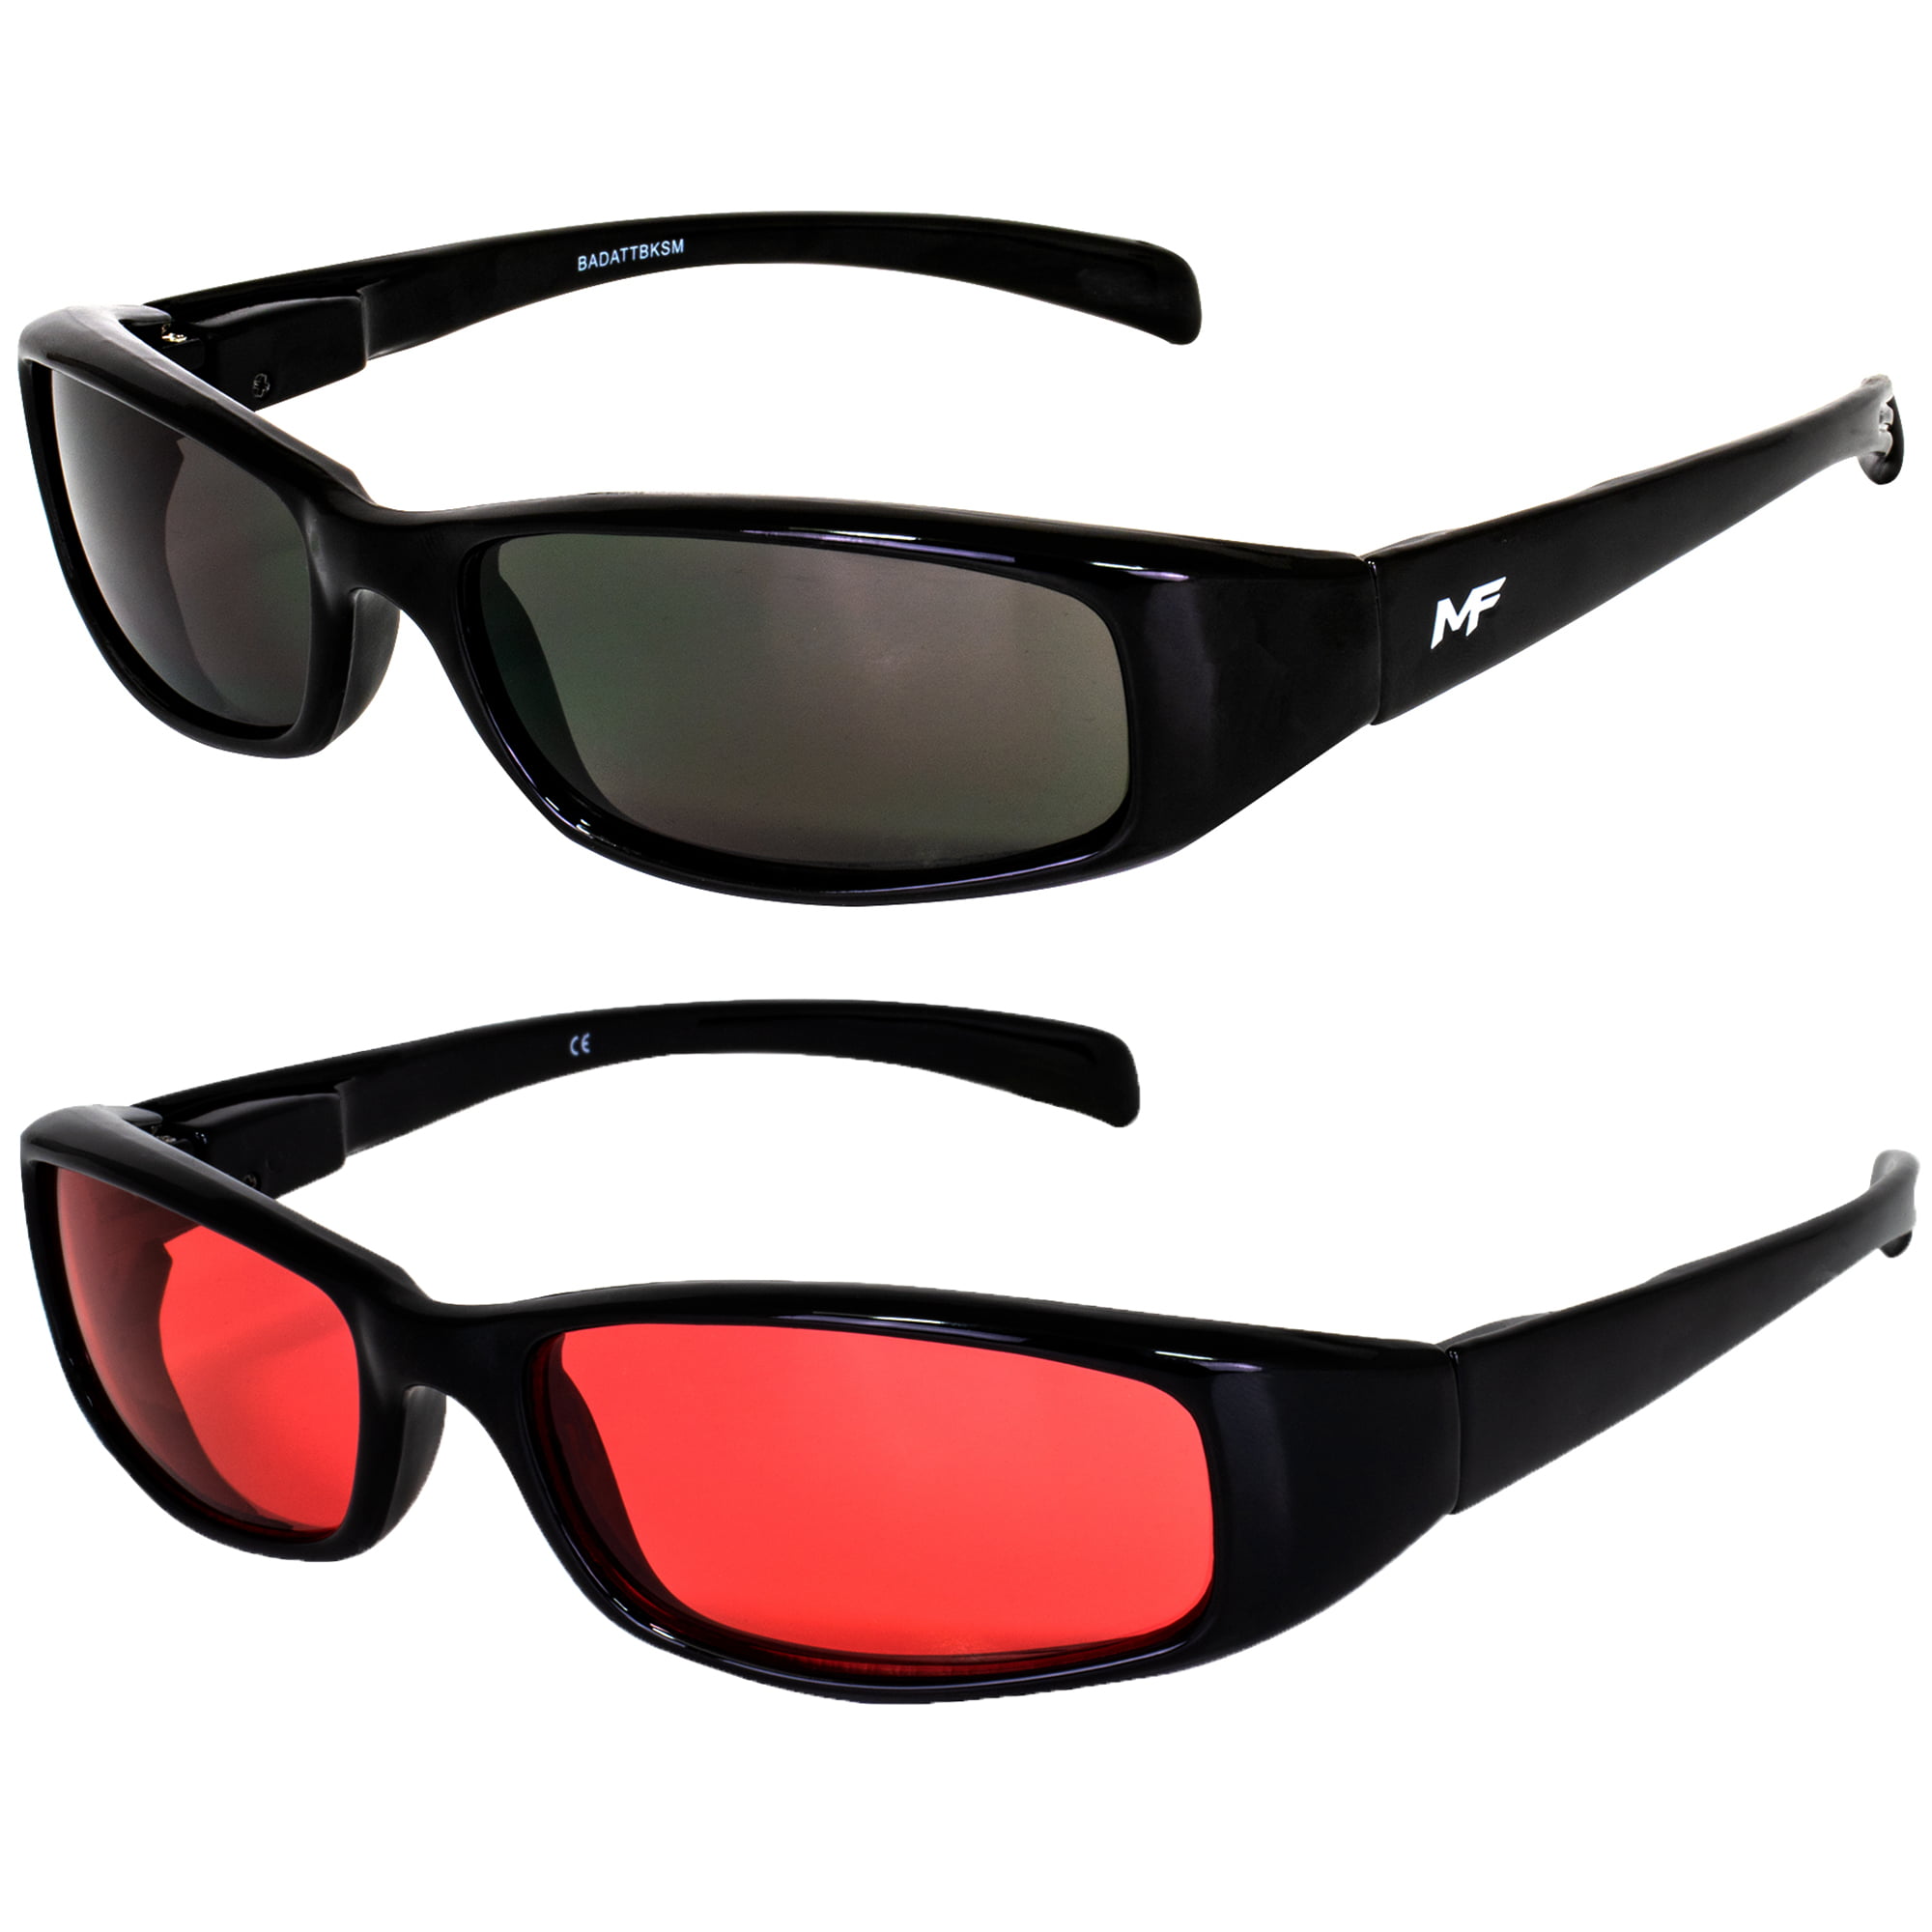 Designer Sunglasses MF Bad Attitude Black Frame Red Lens 100% UV400 